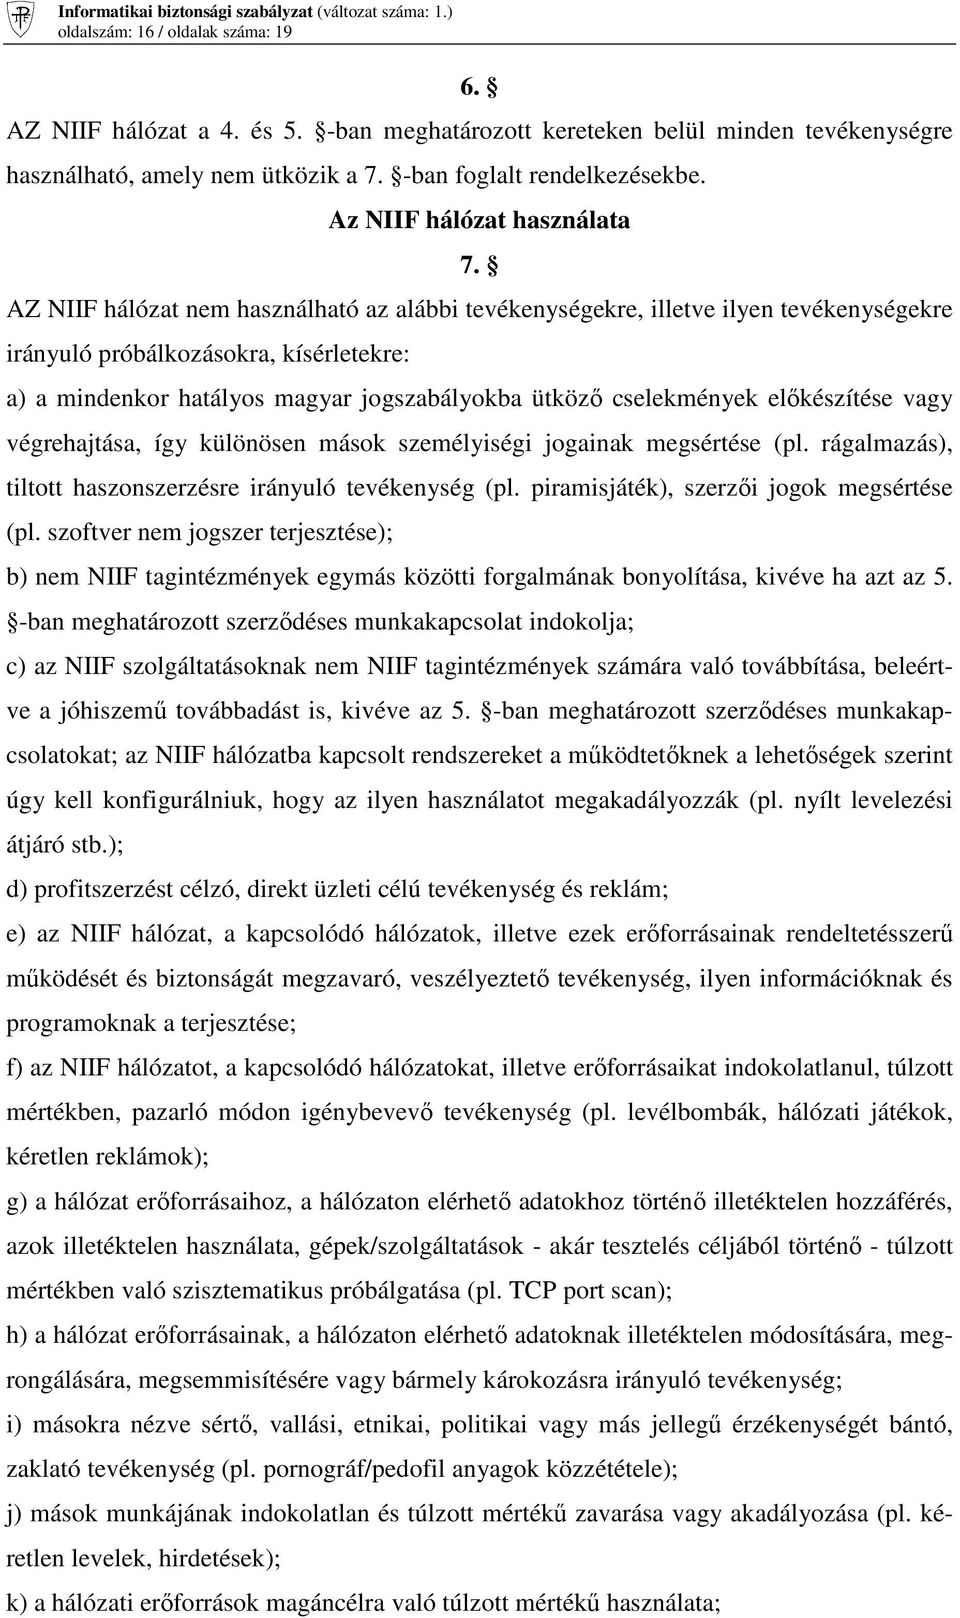 AZ NIIF hálózat nem használható az alábbi tevékenységekre, illetve ilyen tevékenységekre irányuló próbálkozásokra, kísérletekre: a) a mindenkor hatályos magyar jogszabályokba ütközı cselekmények